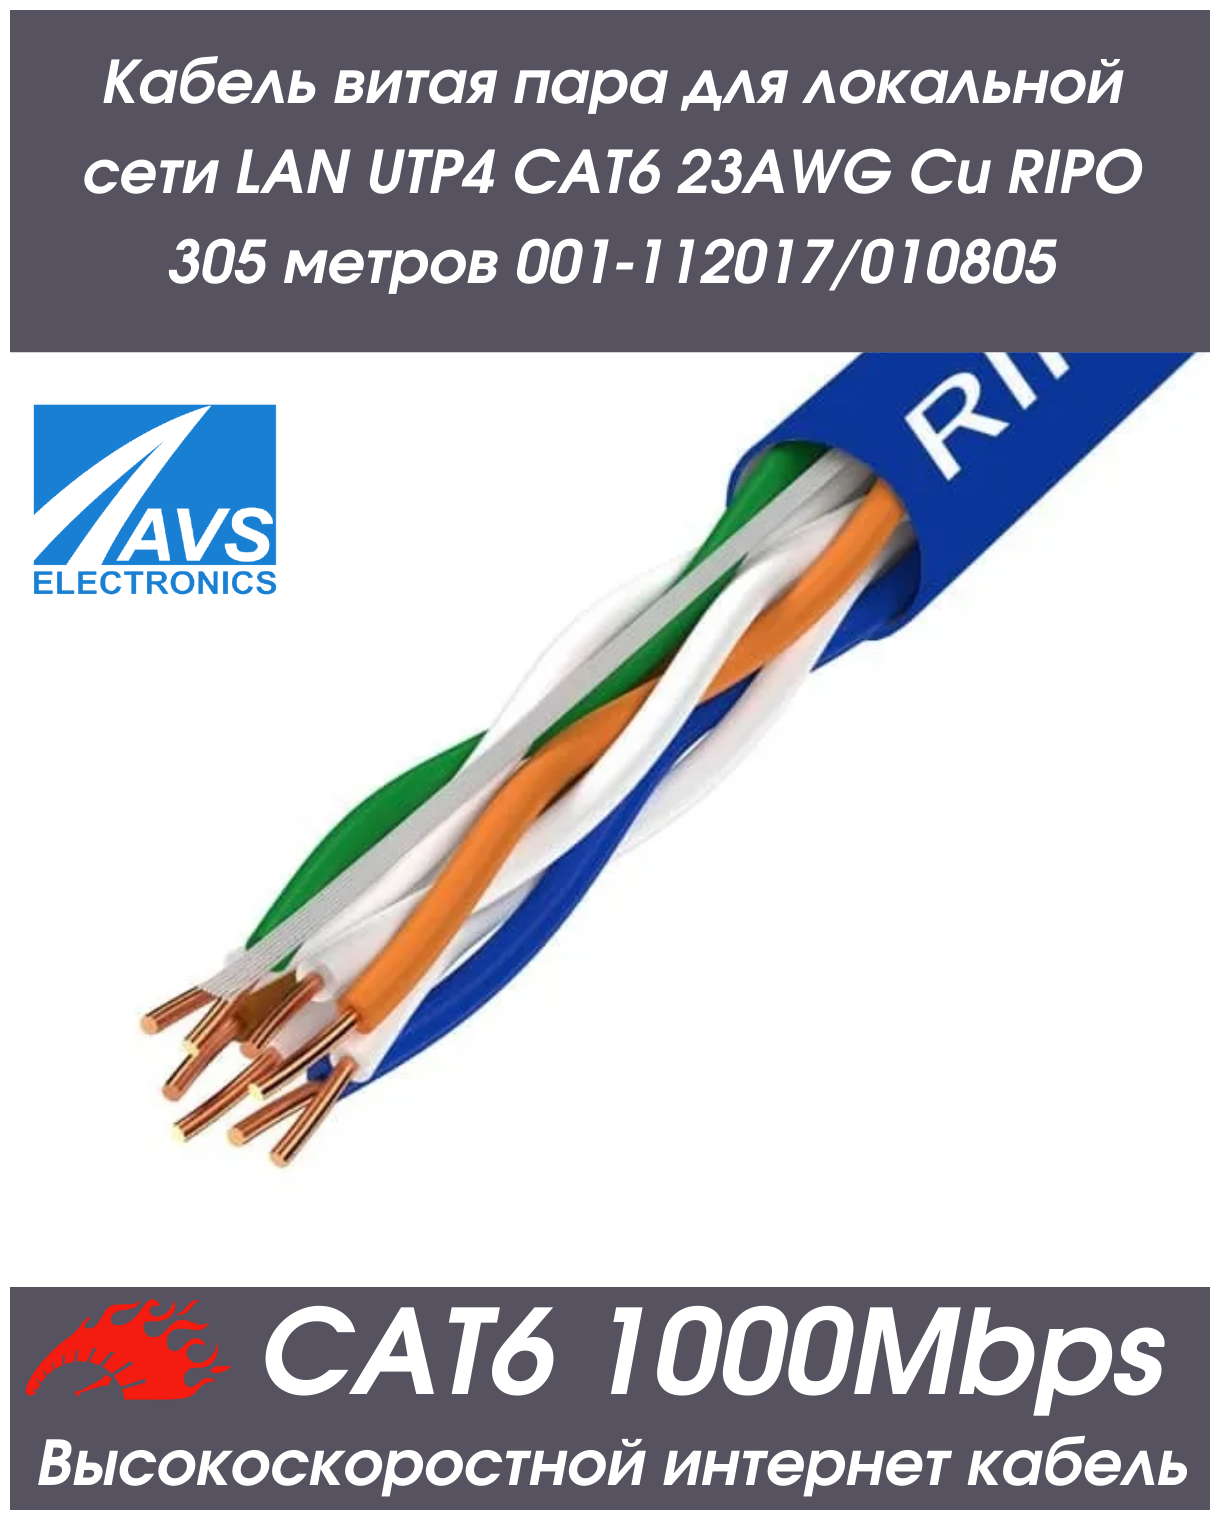 Кабель витая пара для локальной сети LAN UTP4 CAT6 23AWG Cu RIPO 305 метров 001-112017